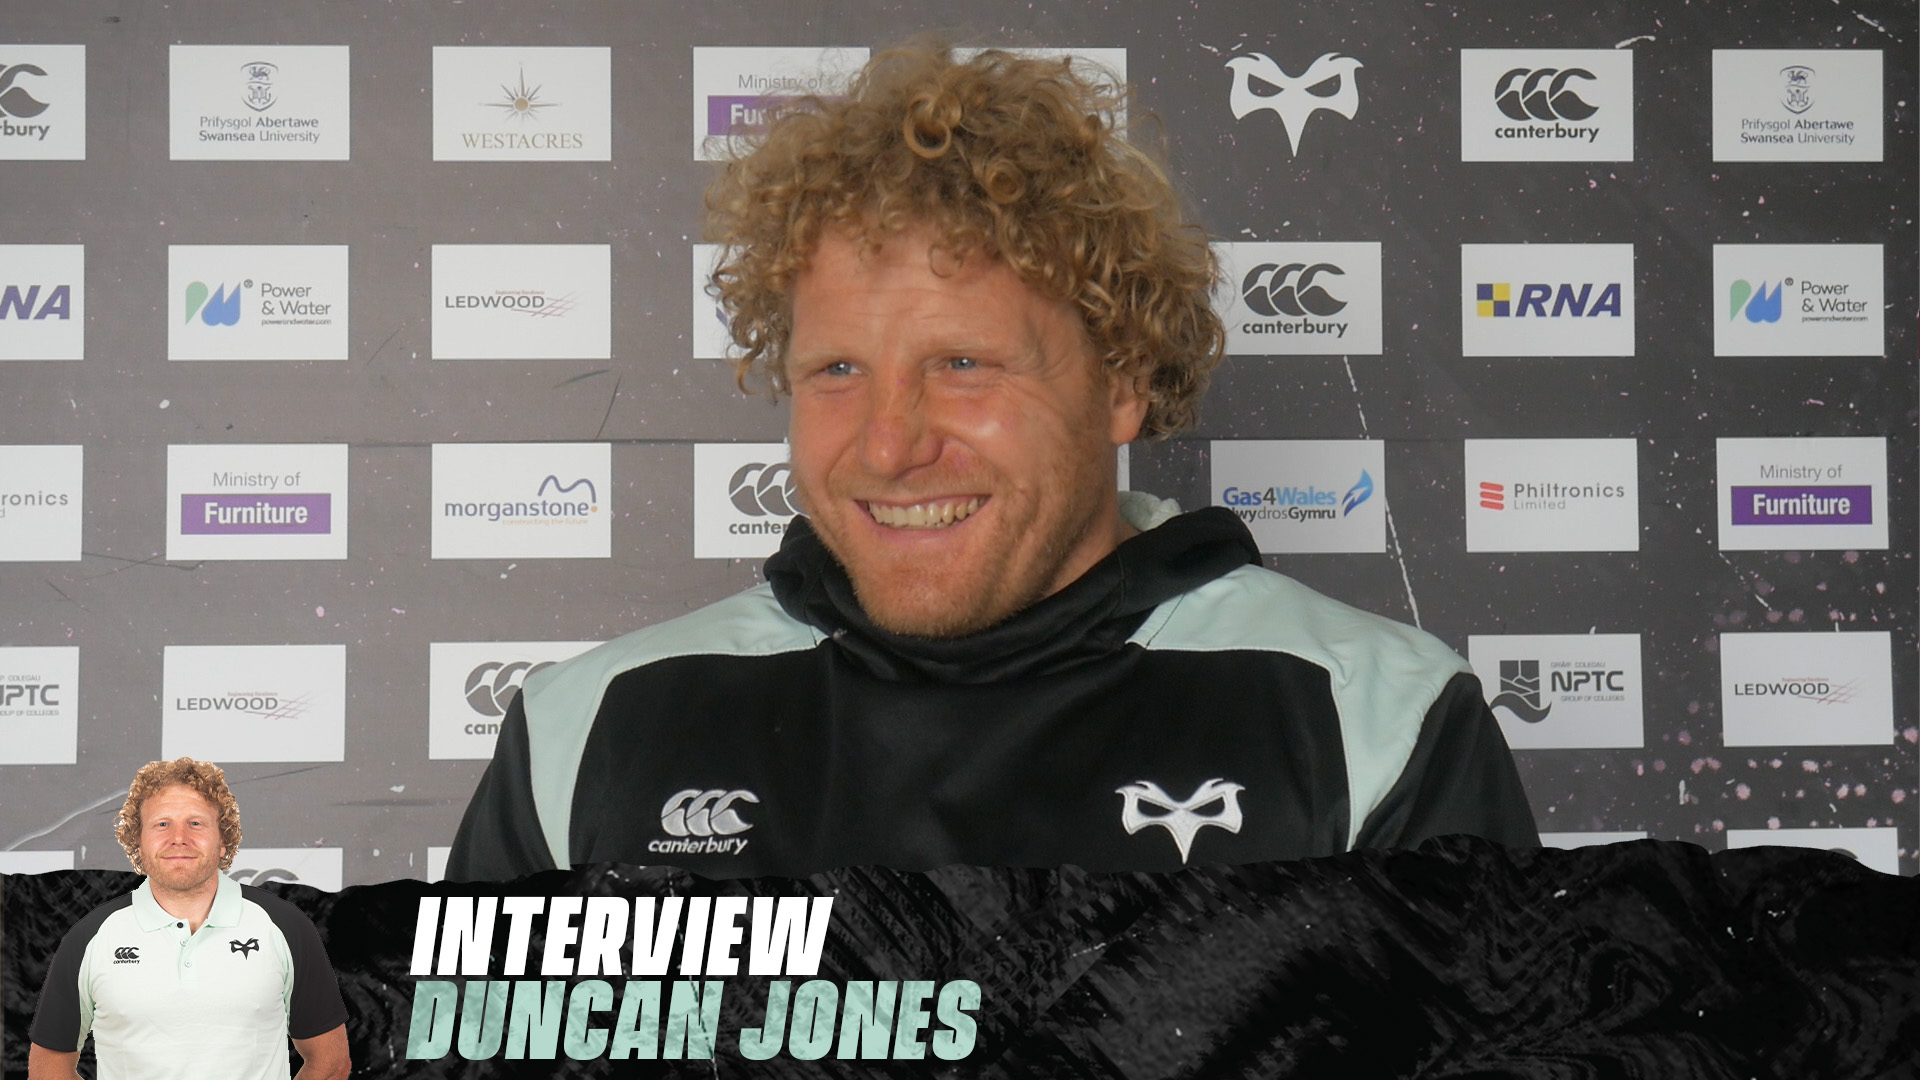 INTERVIEW: Duncan Jones (21st October 2020)